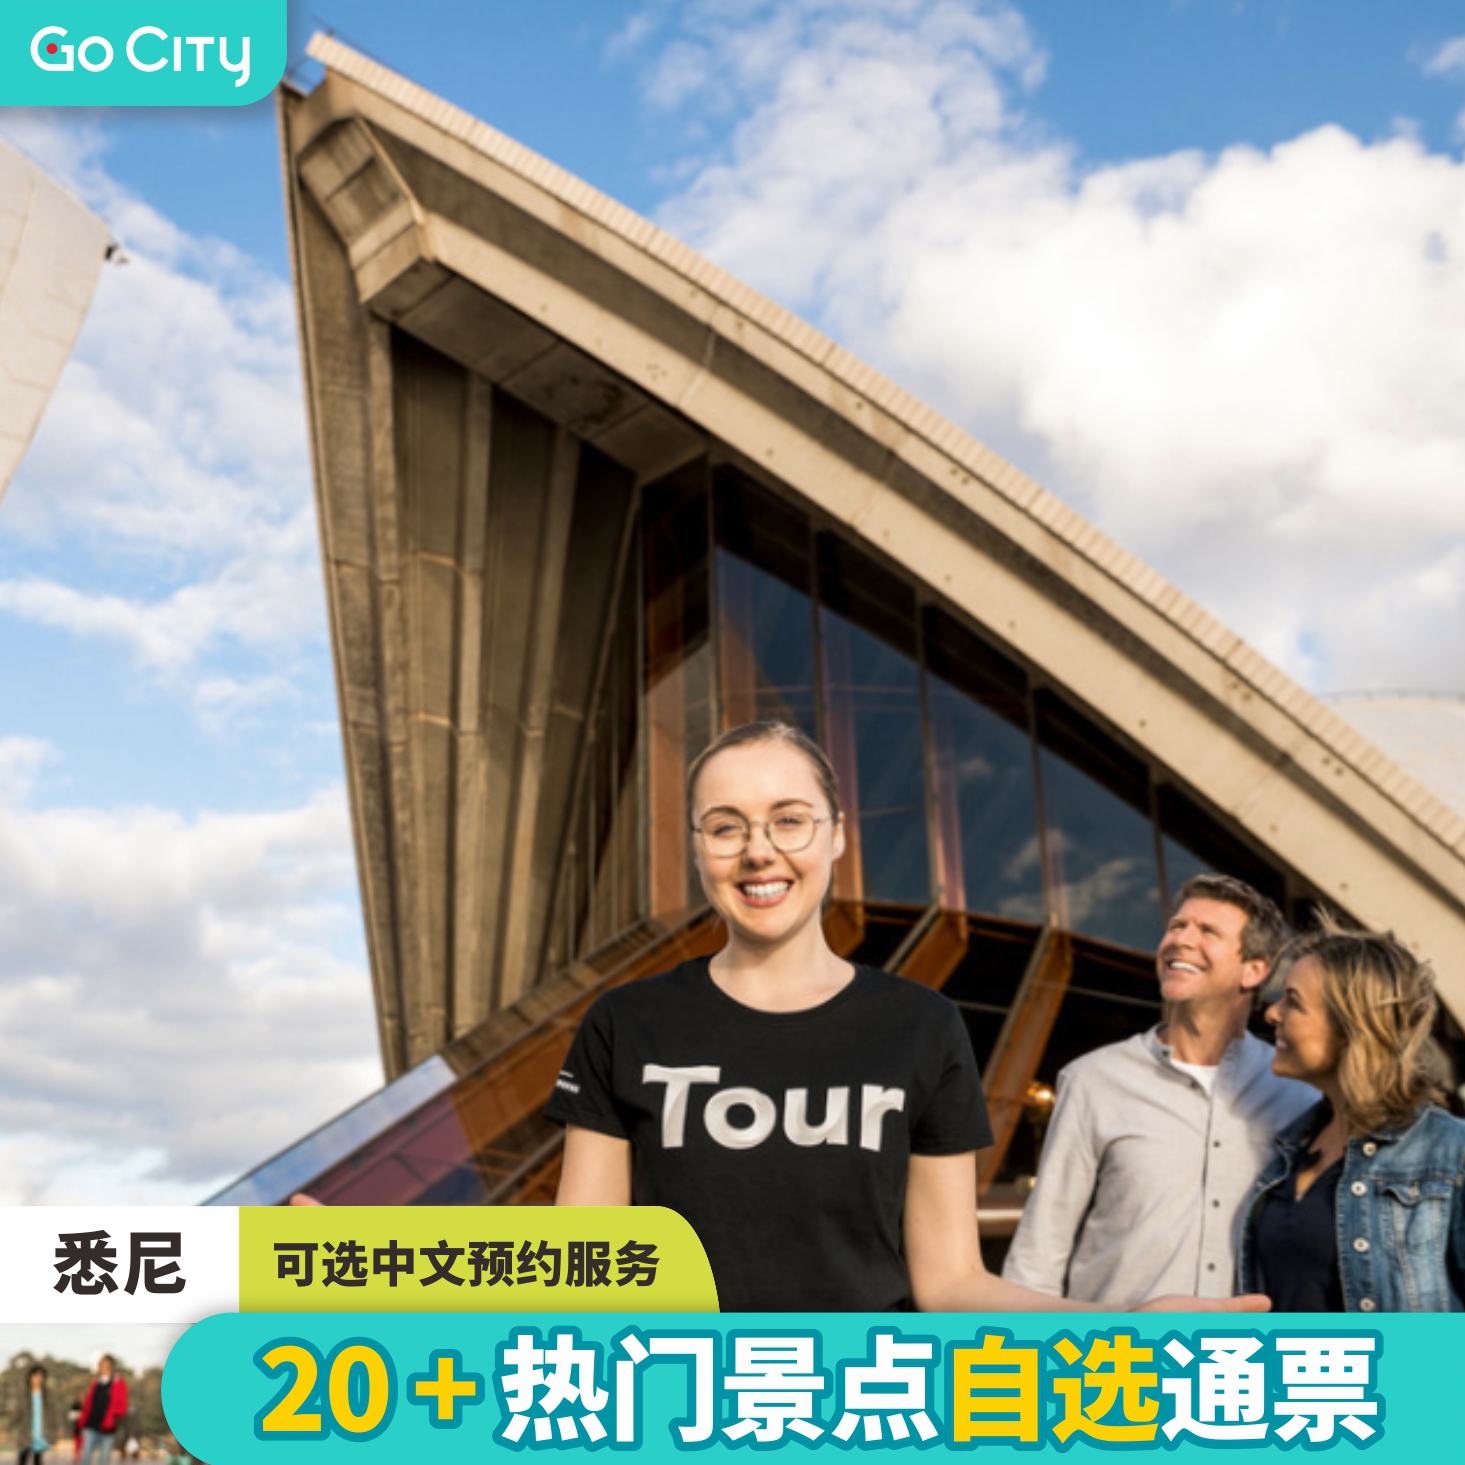 [悉尼歌剧院-Go City悉尼通票]观鲸+塔龙加动物园等25+景点自选